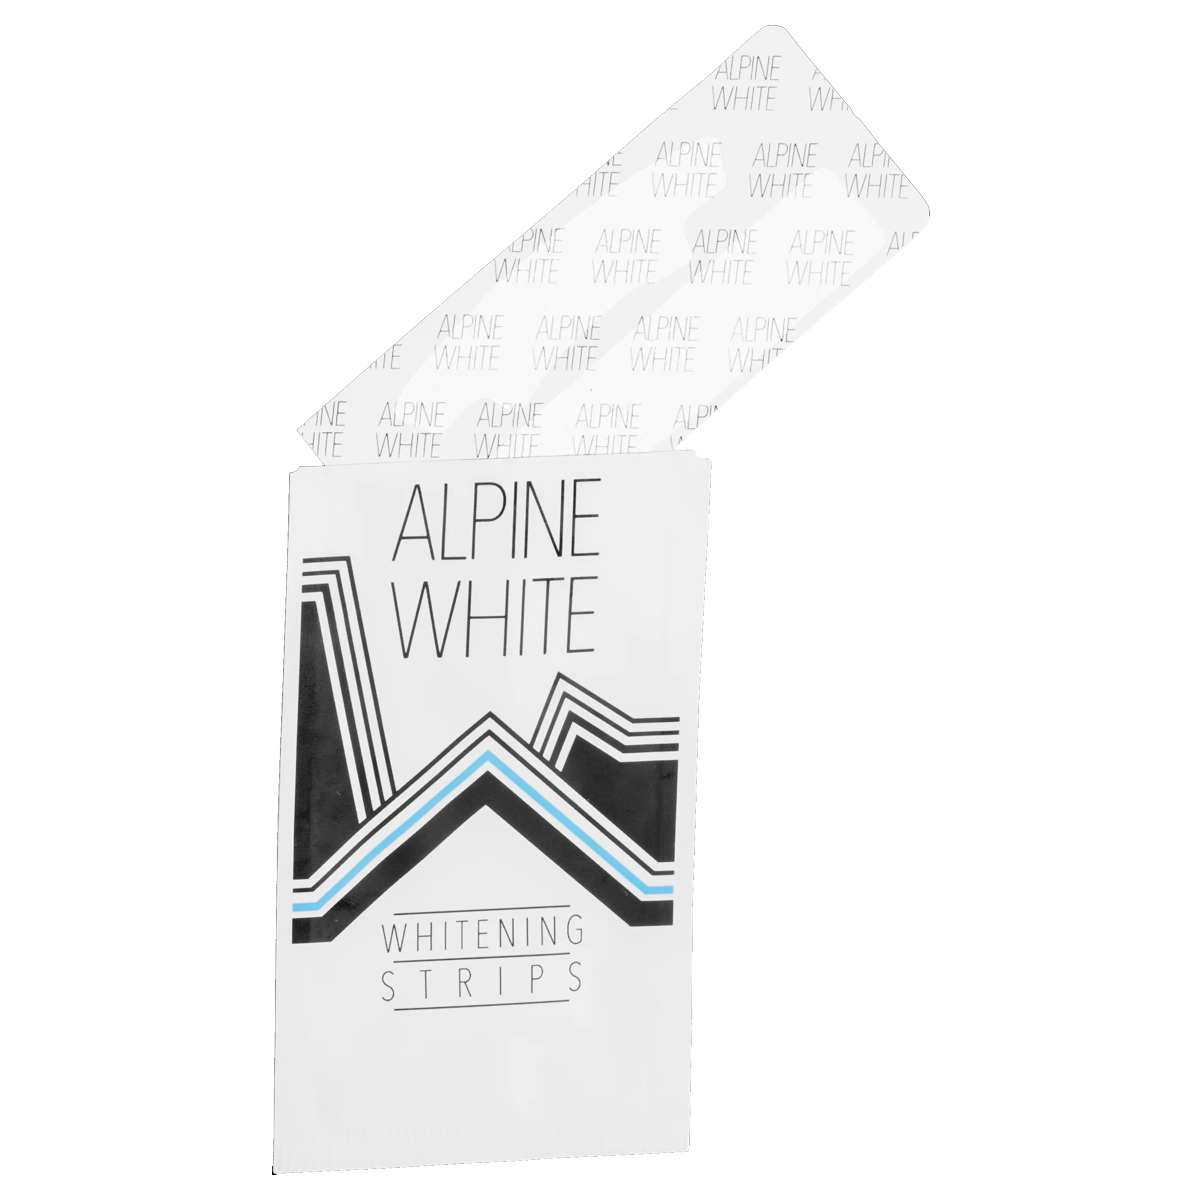 Alpine_White_Whitening_Strips_fuer_7_Anwendungen_online_kaufen